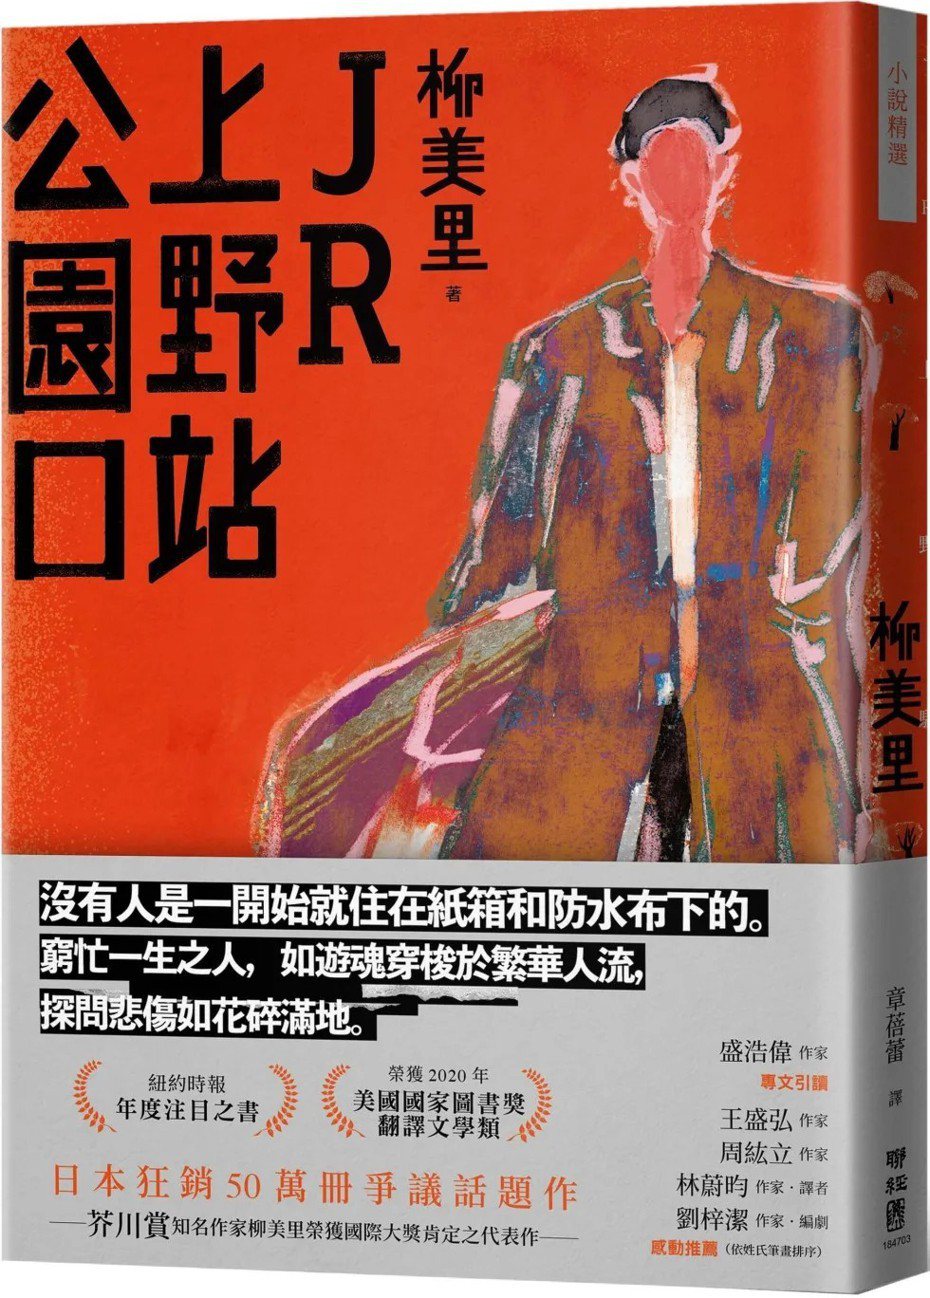 書名：《JR上野站公園口》
作者：柳美里
出版社：聯經出版
出版時間：2023年3月2日